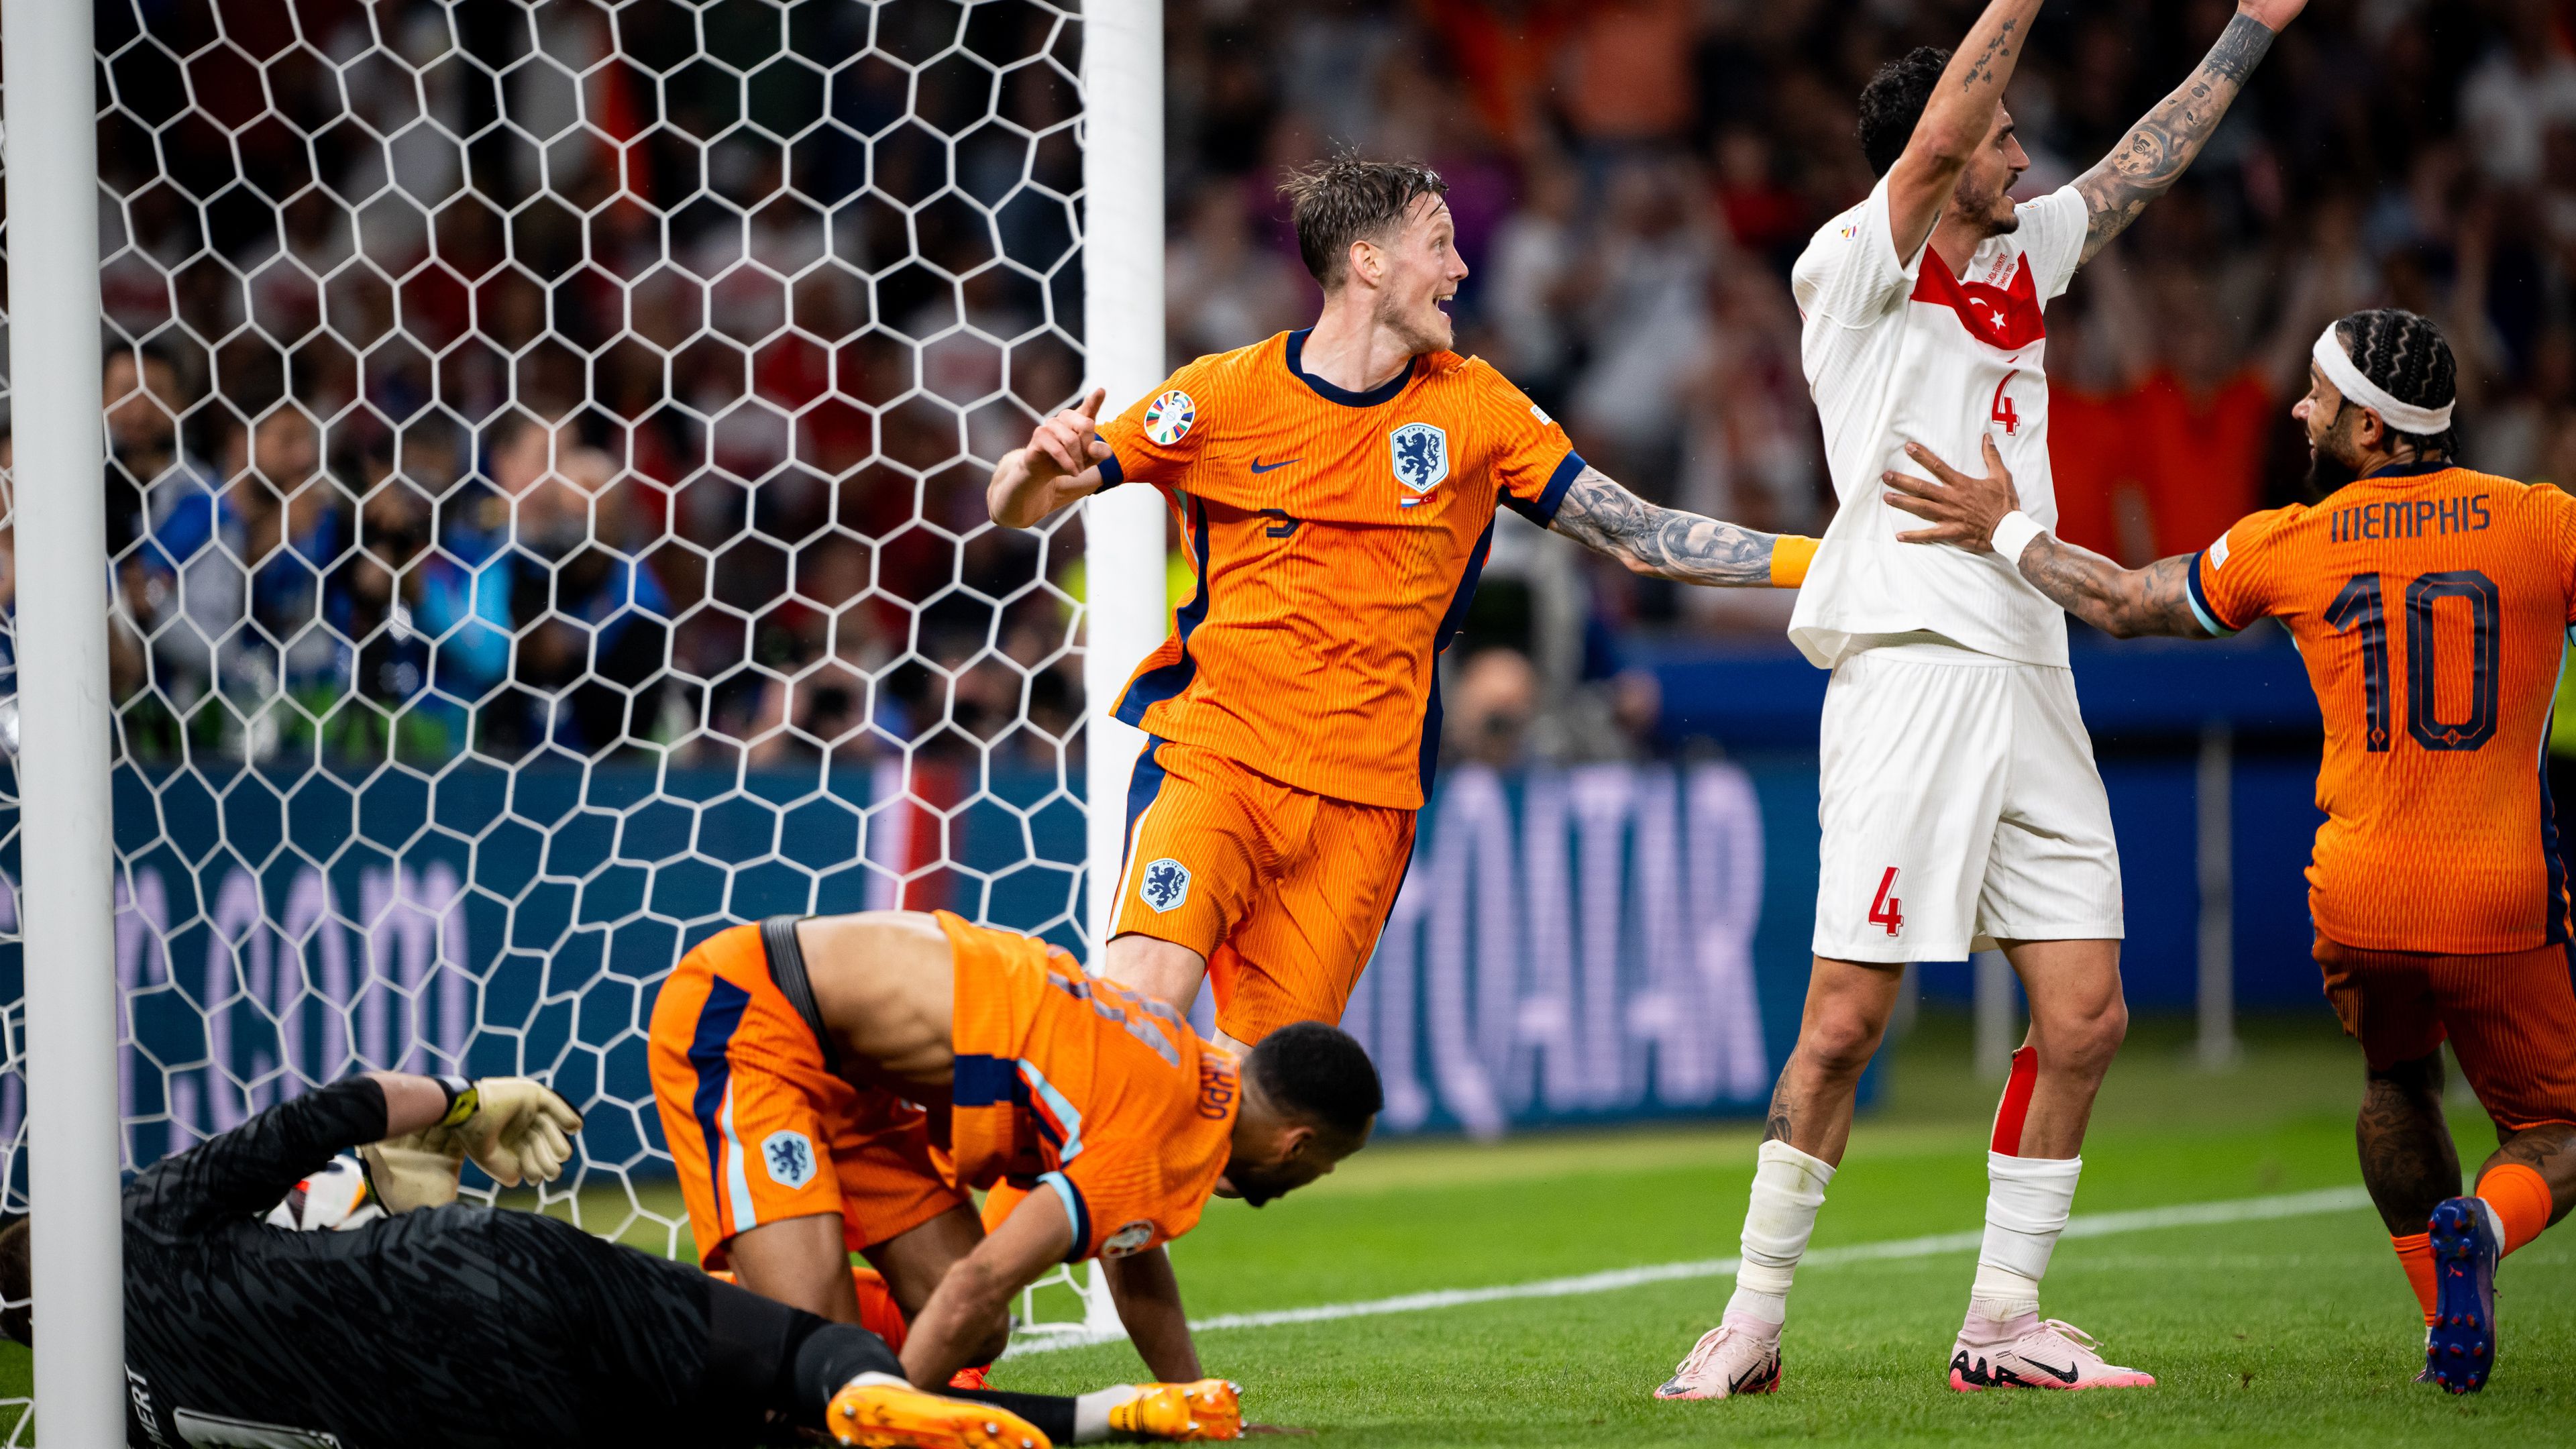 Hiába a török hősiesség, hat perc alatt fordított az Eb-elődöntőbe jutó Hollandia